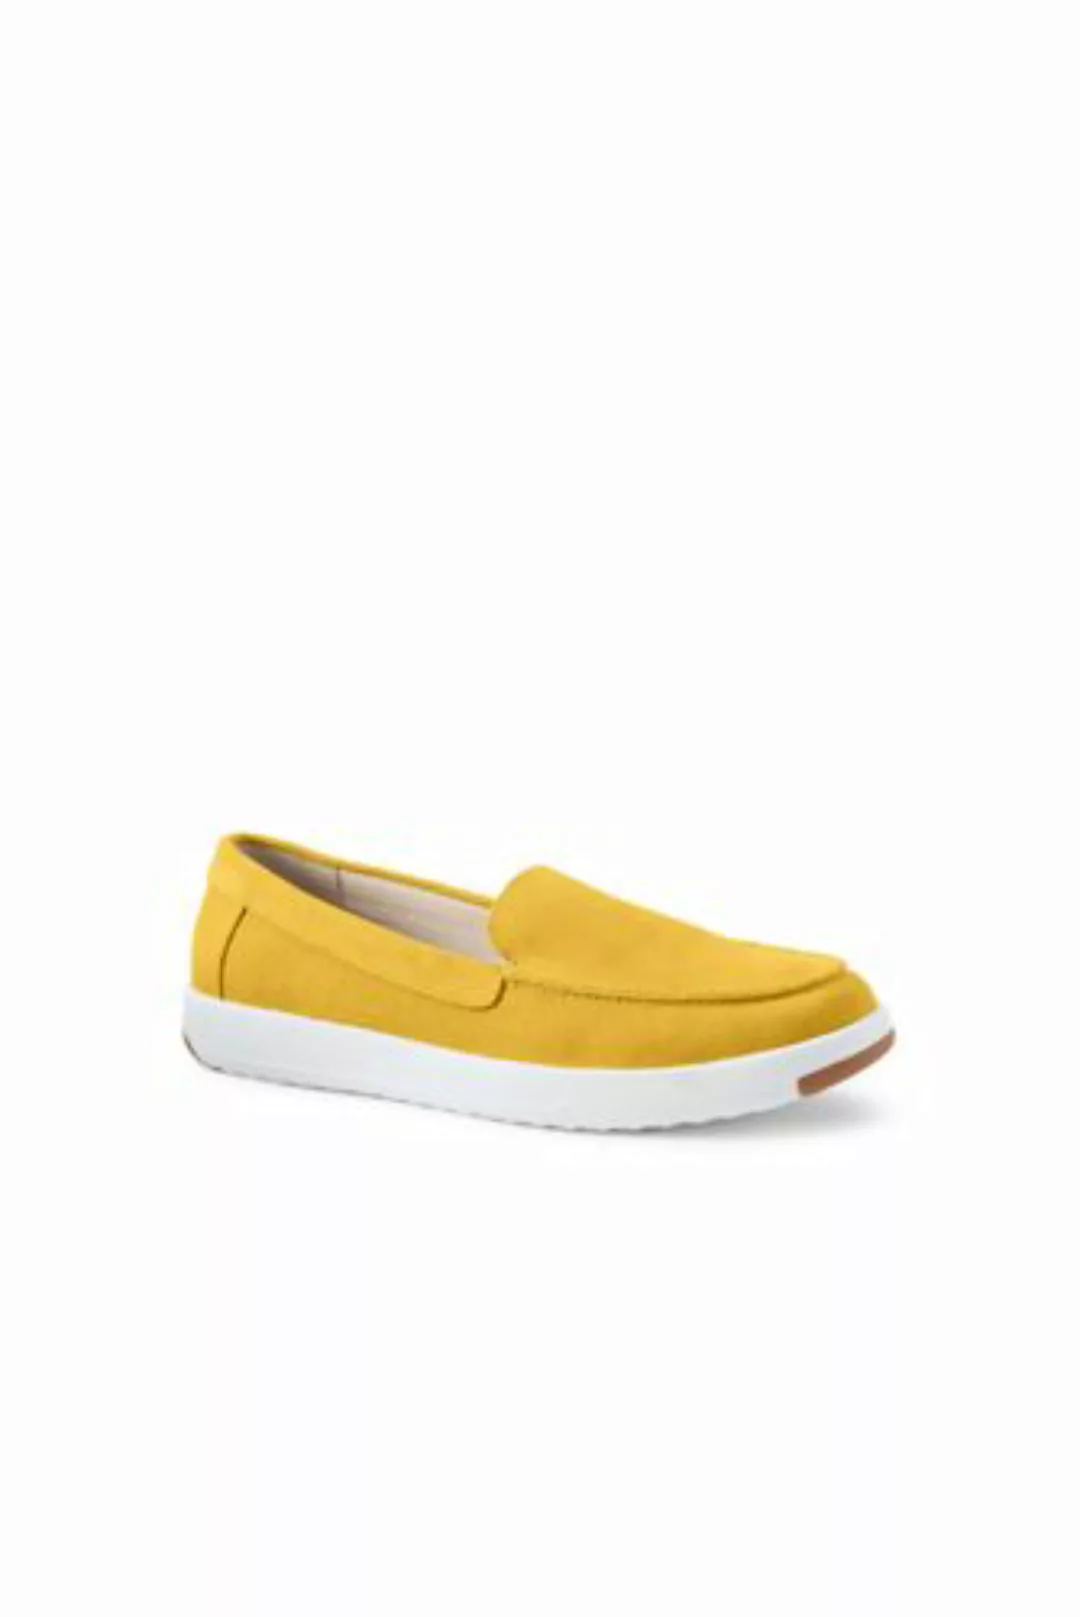 Federleichte Komfort-Loafer, Damen, Größe: 39 Normal, Gelb, Rauleder, by La günstig online kaufen